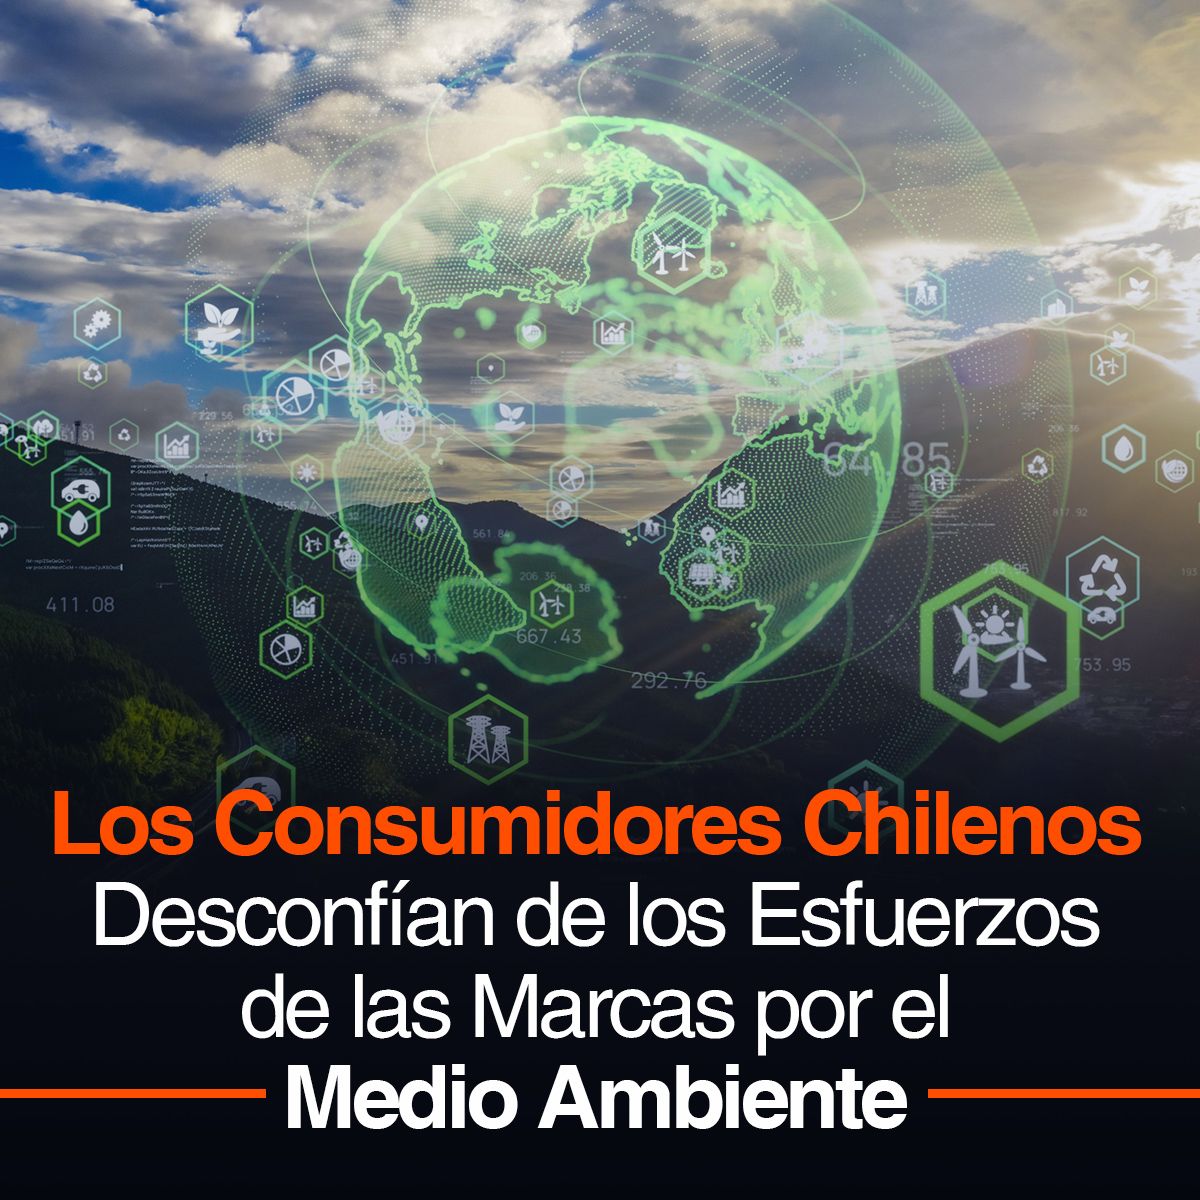 Los Consumidores Chilenos Desconfían de los Esfuerzos de las Marcas por el Medio Ambiente